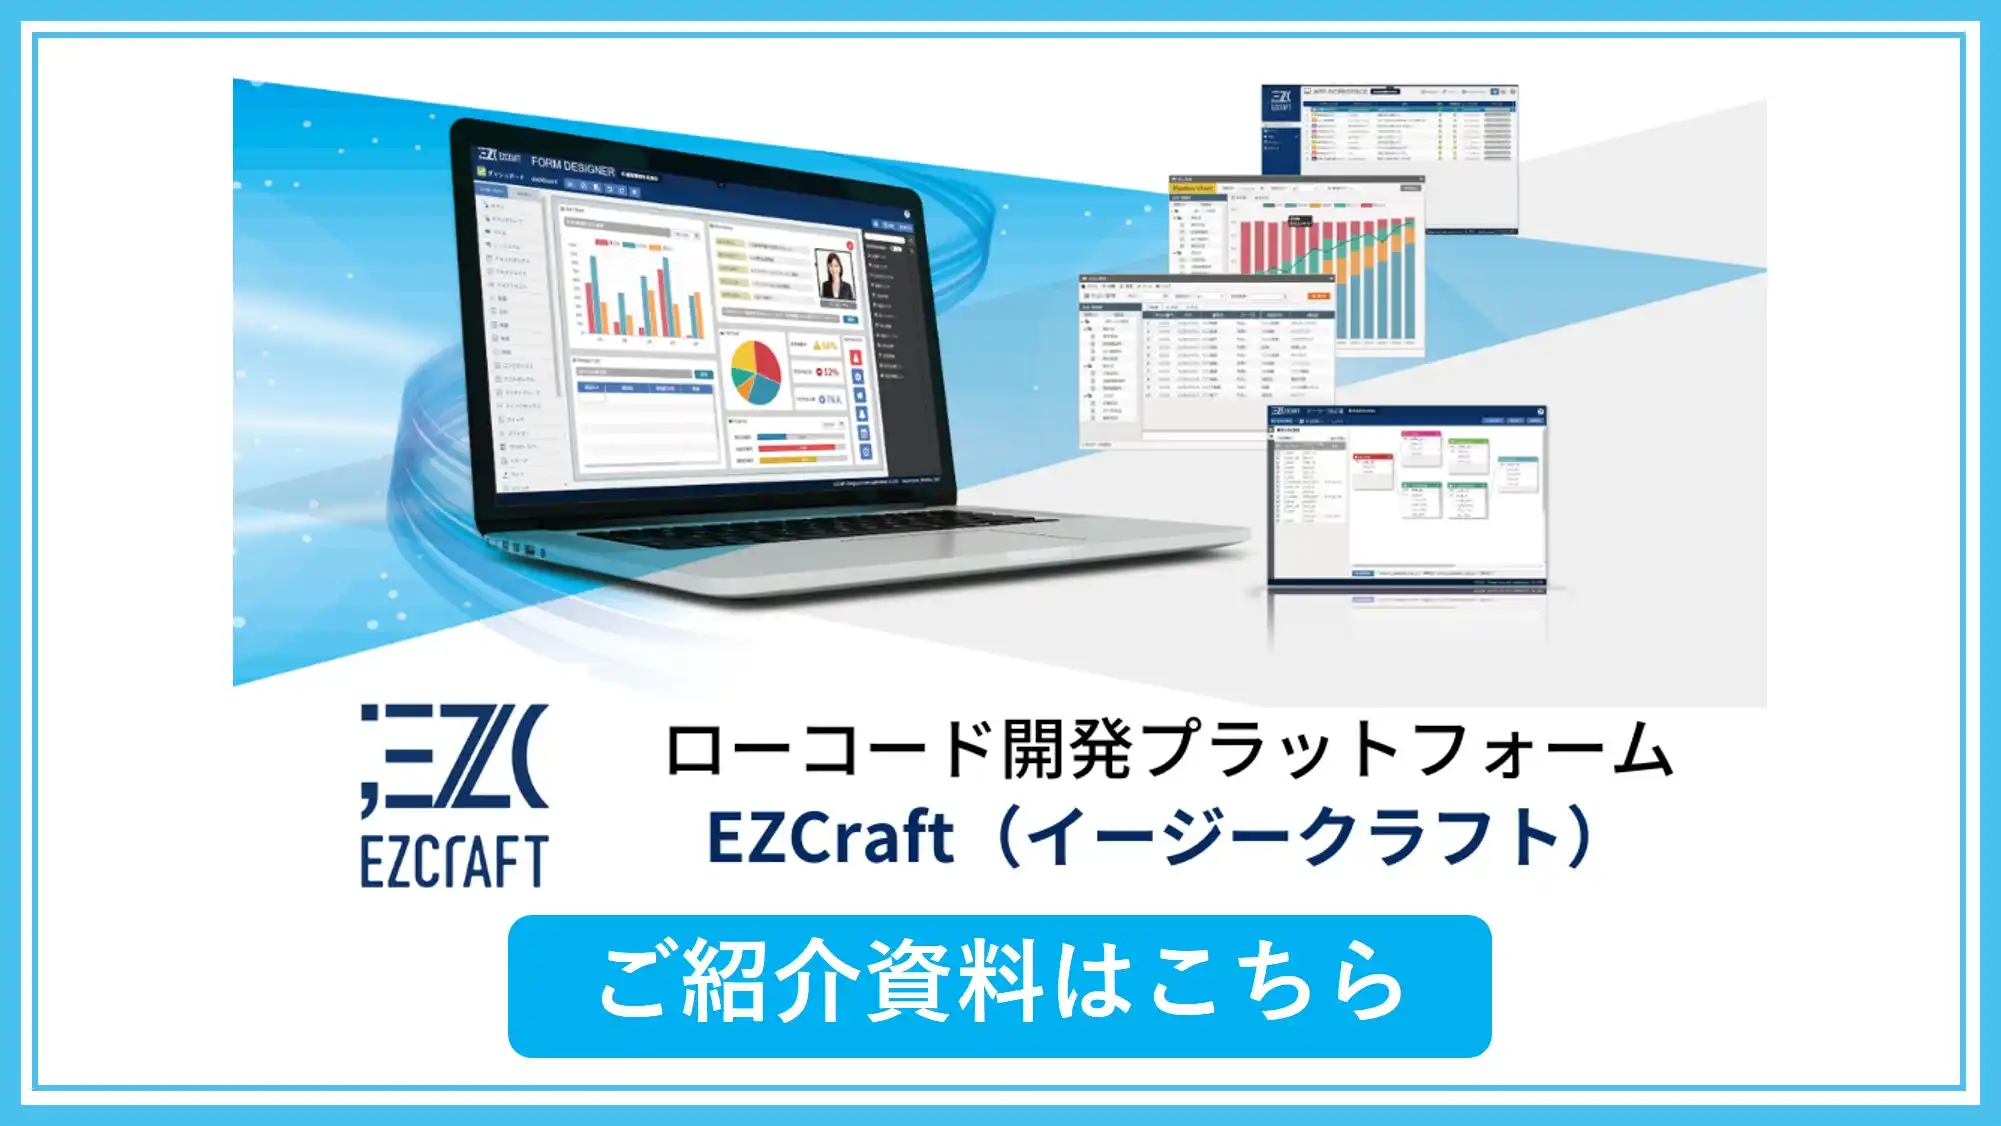 急拡大するローコード開発市場の現状と、ローコード開発プラットフォーム EZCraft（イージークラフト）についてご紹介。